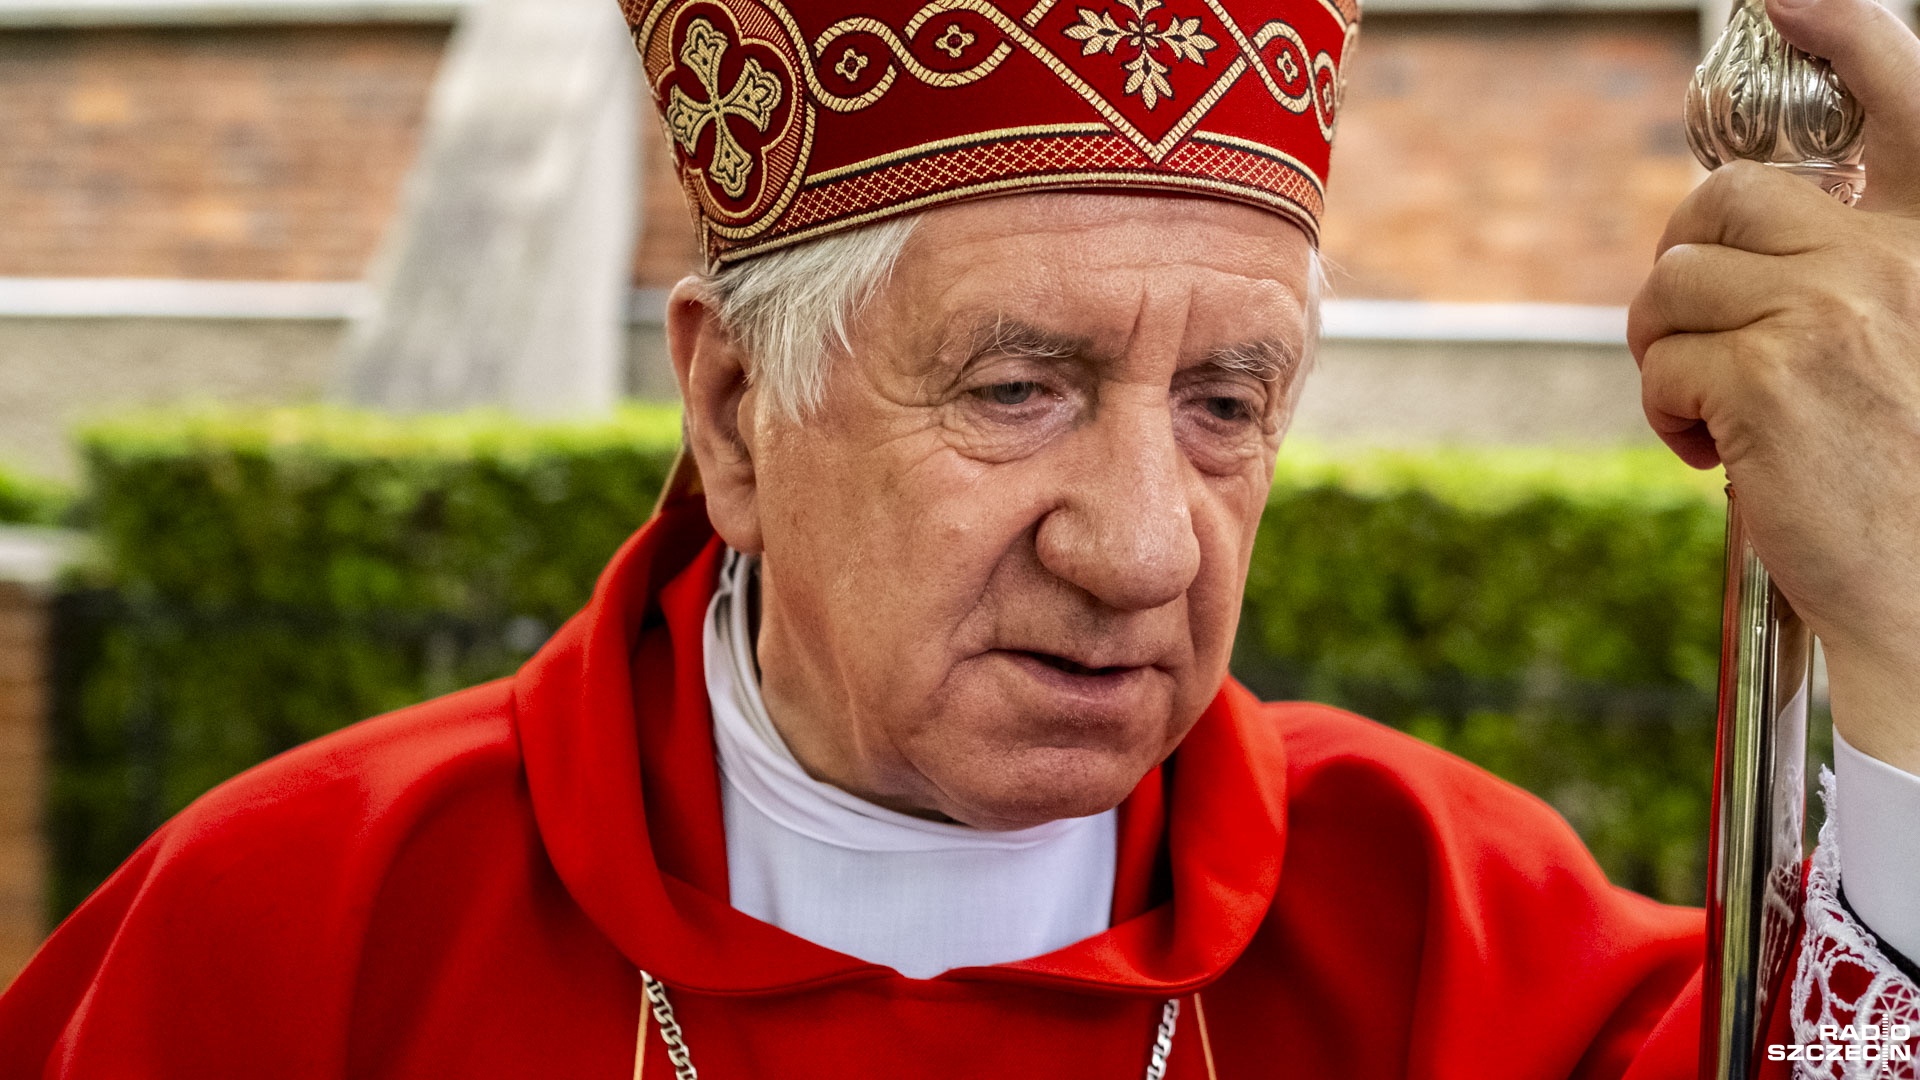 Odejście arcybiskupa Dzięgi nie było spowodowane stanem zdrowia duchownego, a zaniedbaniami m.in. w sprawie zgłaszania molestowania nieletnich - zaznaczyła Nuncjatura Apostolska.